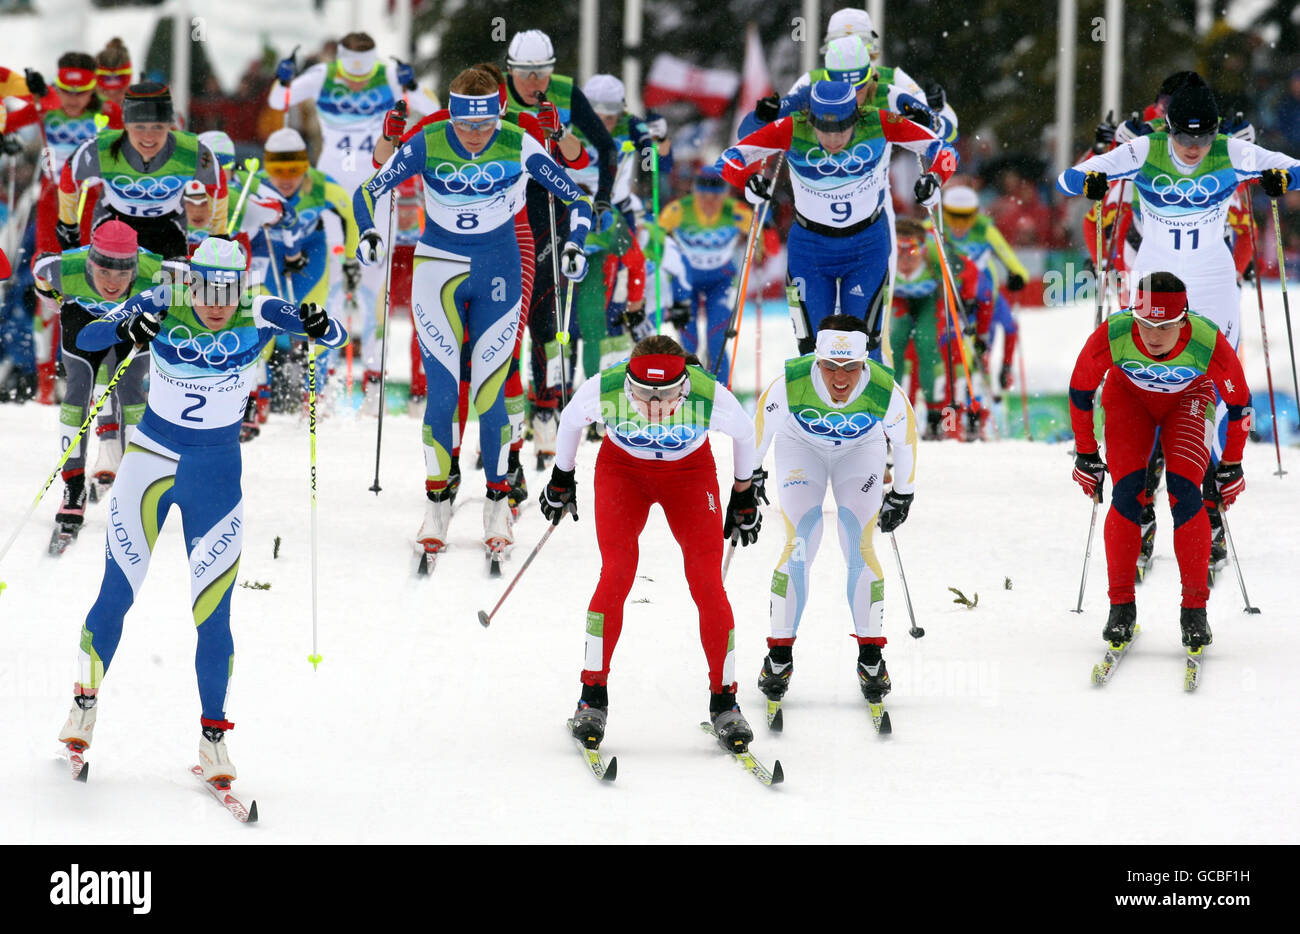 Der spätere polnische Sieger Justyna Kowalczyk (Mitte) nimmt zusammen mit anderen Wettbewerbern am 30 km langen Cross Country Skiing Womens Mass Start Classic im Whistler Olympic Park, Whistler, Kanada Teil. Stockfoto